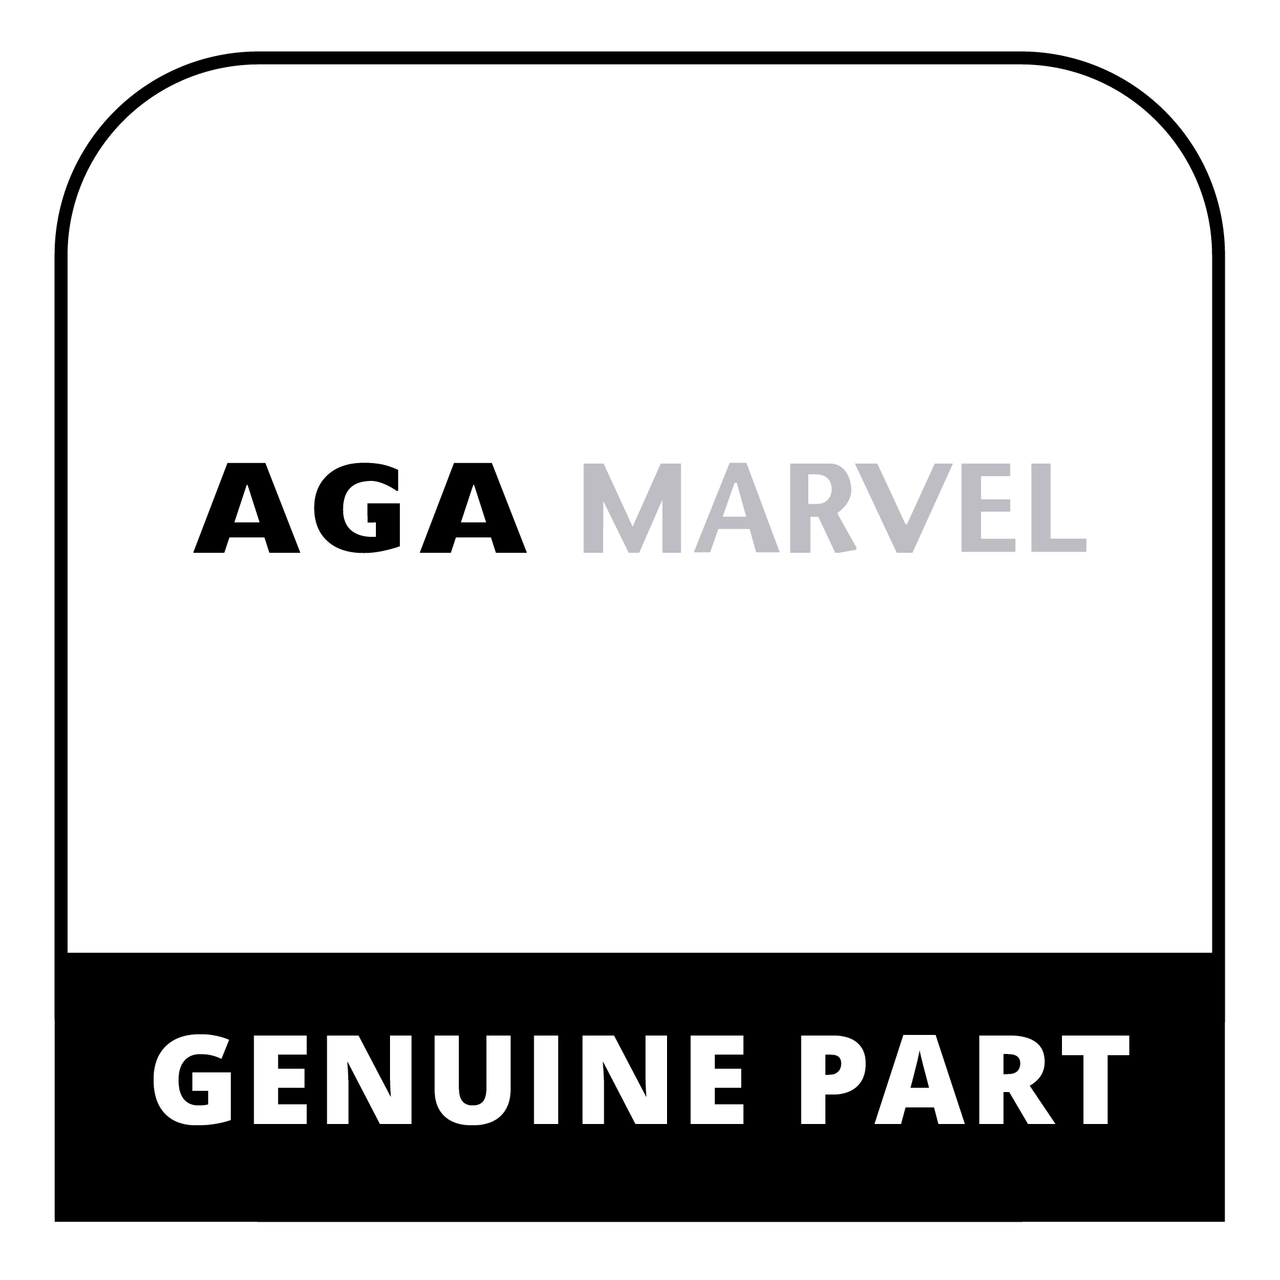 AGA Marvel C1129 - Mw Glass Retaining Frame - Genuine AGA Marvel Part